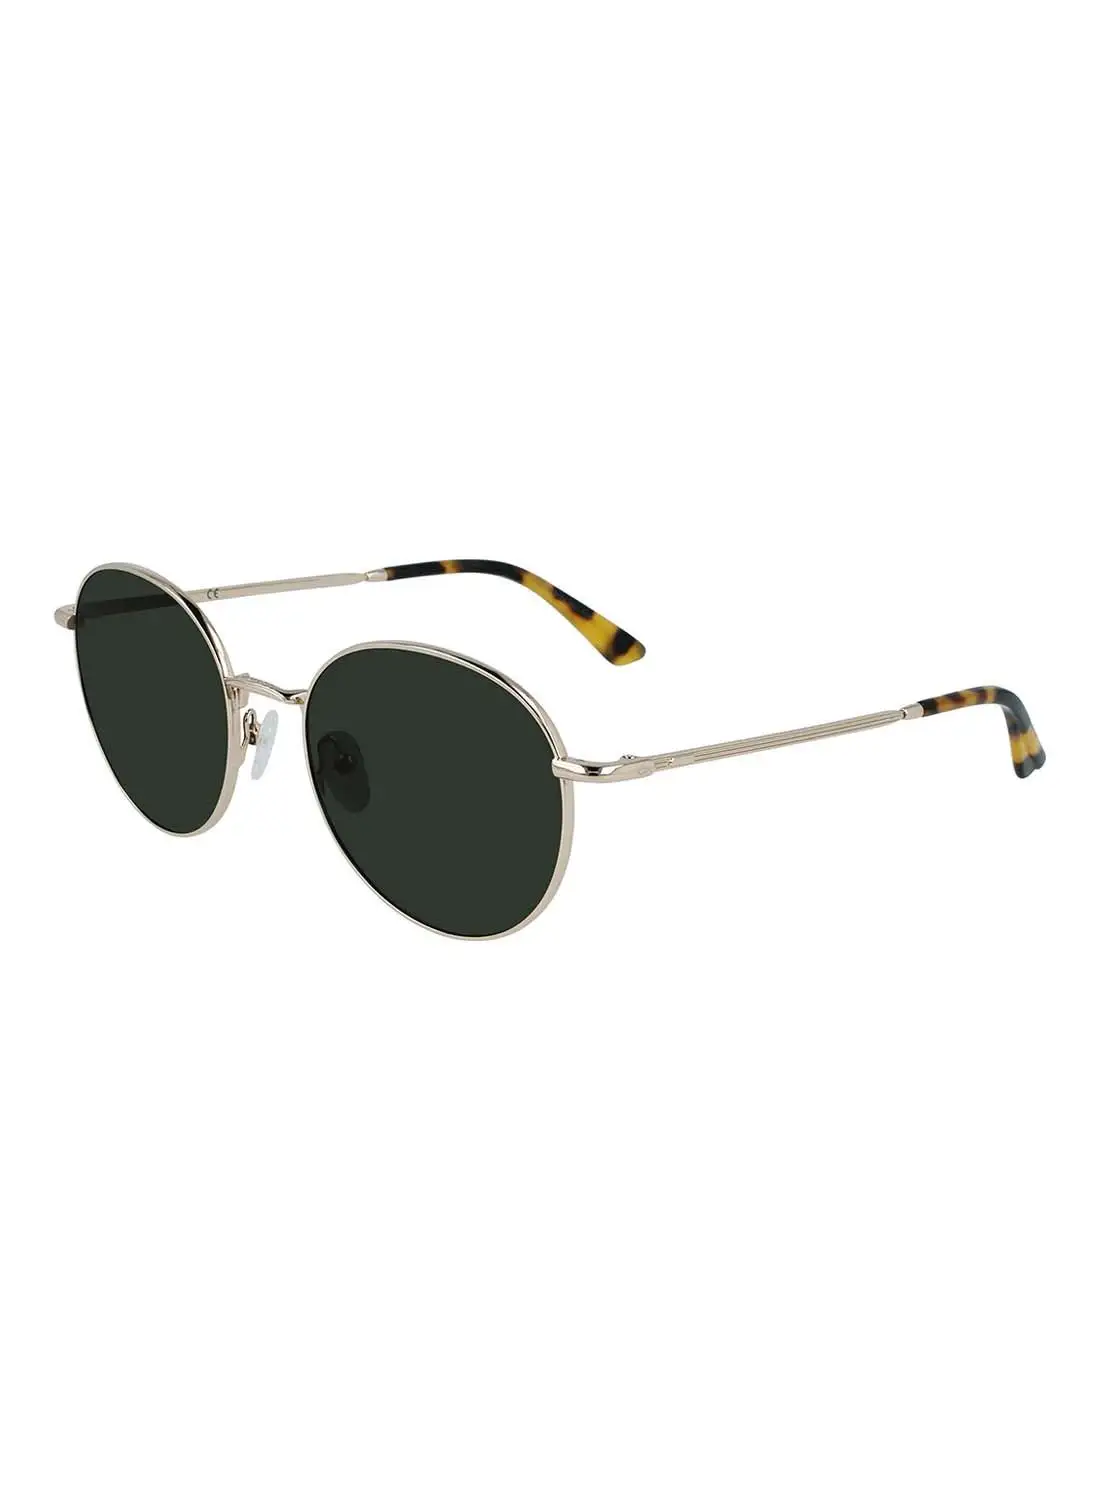 CALVIN KLEIN Full Rim Metal Round  Sunglasses CK21127S-717-5420